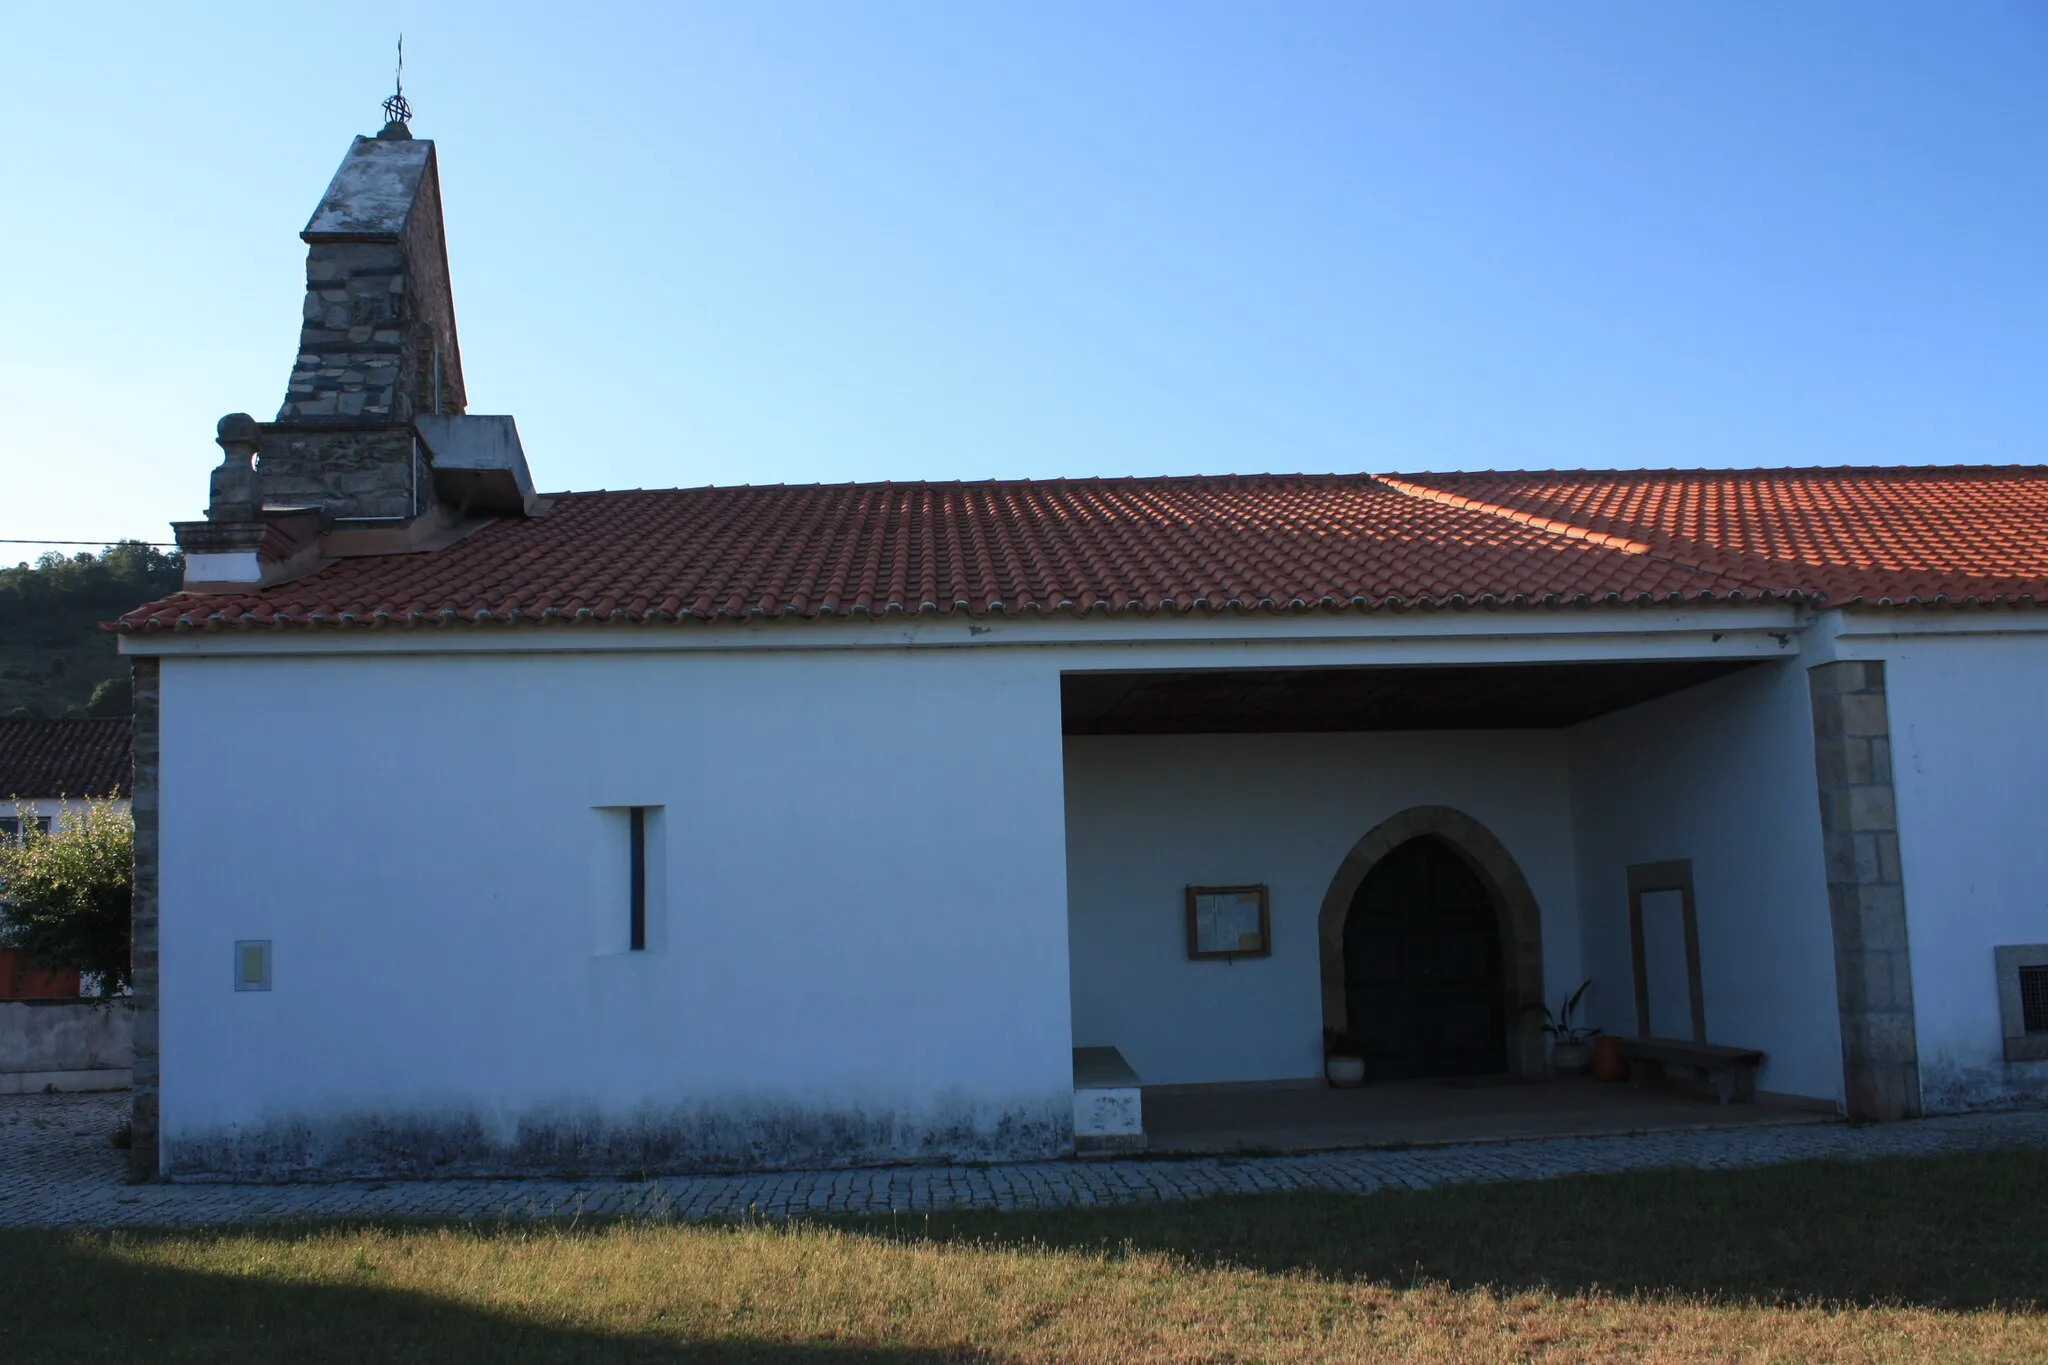 Photo showing: A Igreja Paroquial de Quintela de Lampaças situa-se na Rua 25 de Abril (EN15), na freguesia de Quintela de Lampaças, concelho e distrito de Bragança, Trás-os-Montes, Portugal.